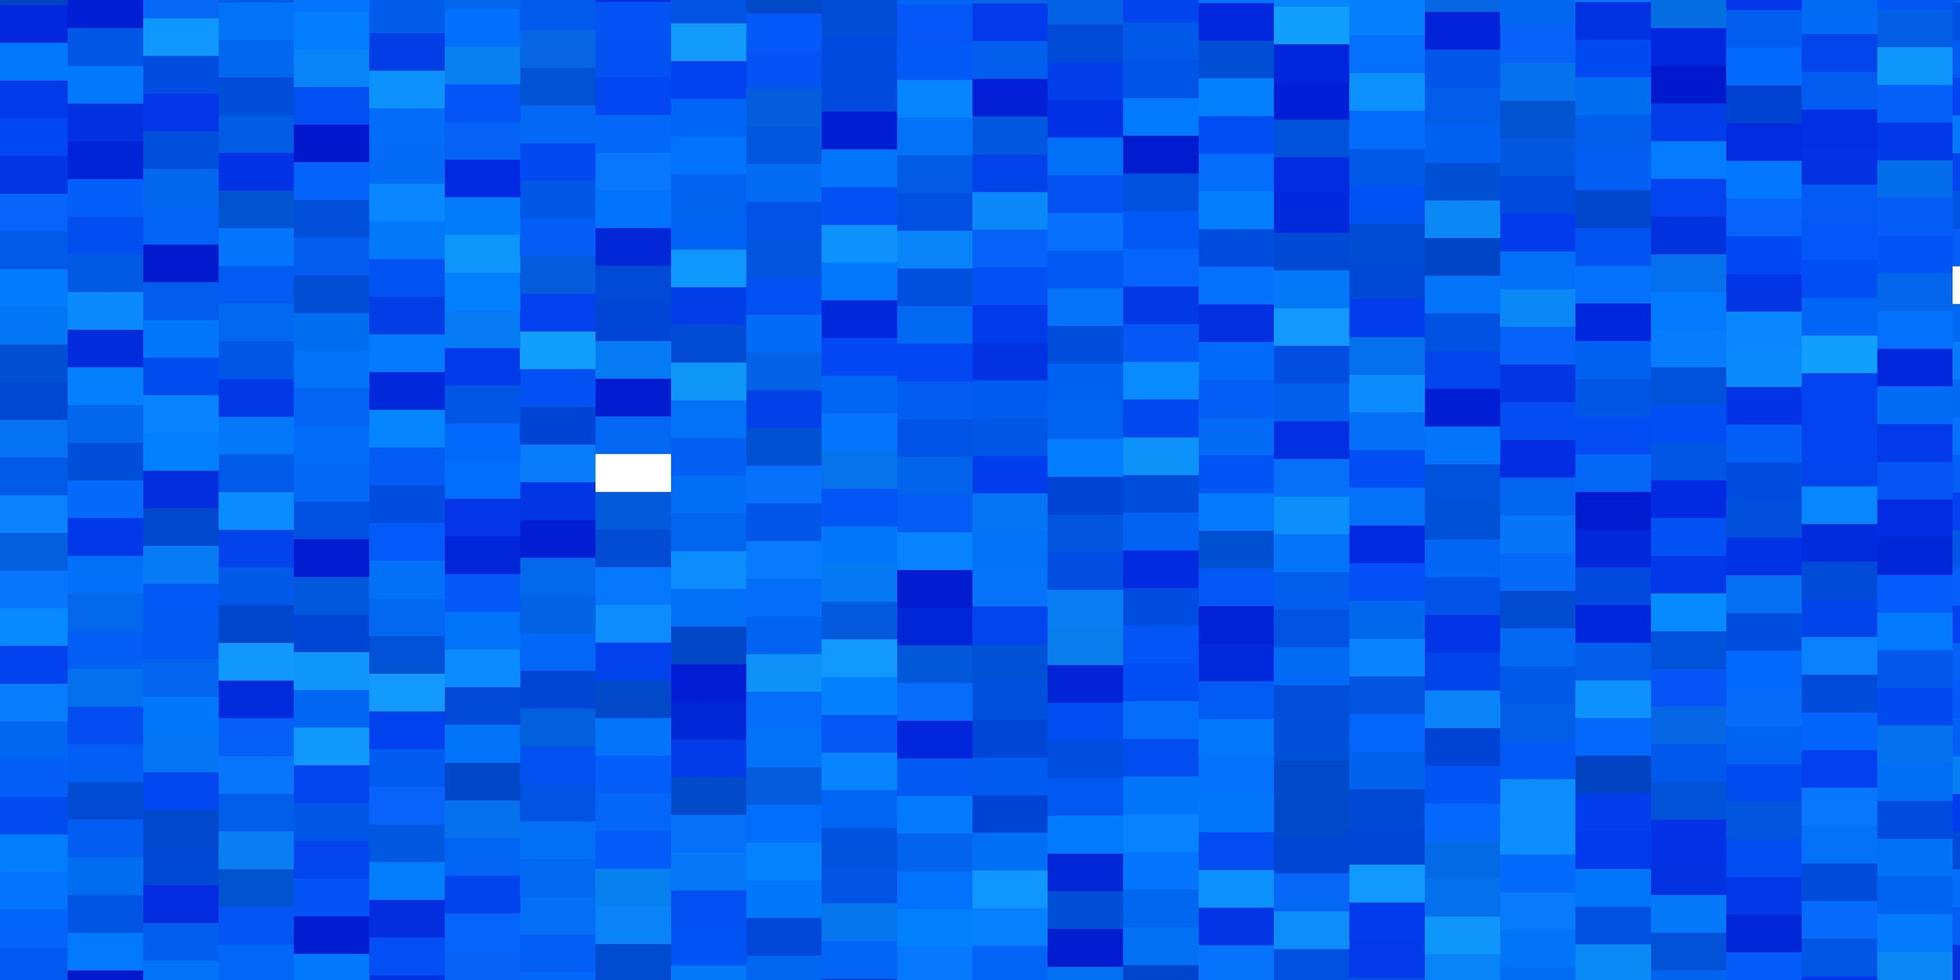 sfondo vettoriale azzurro con rettangoli